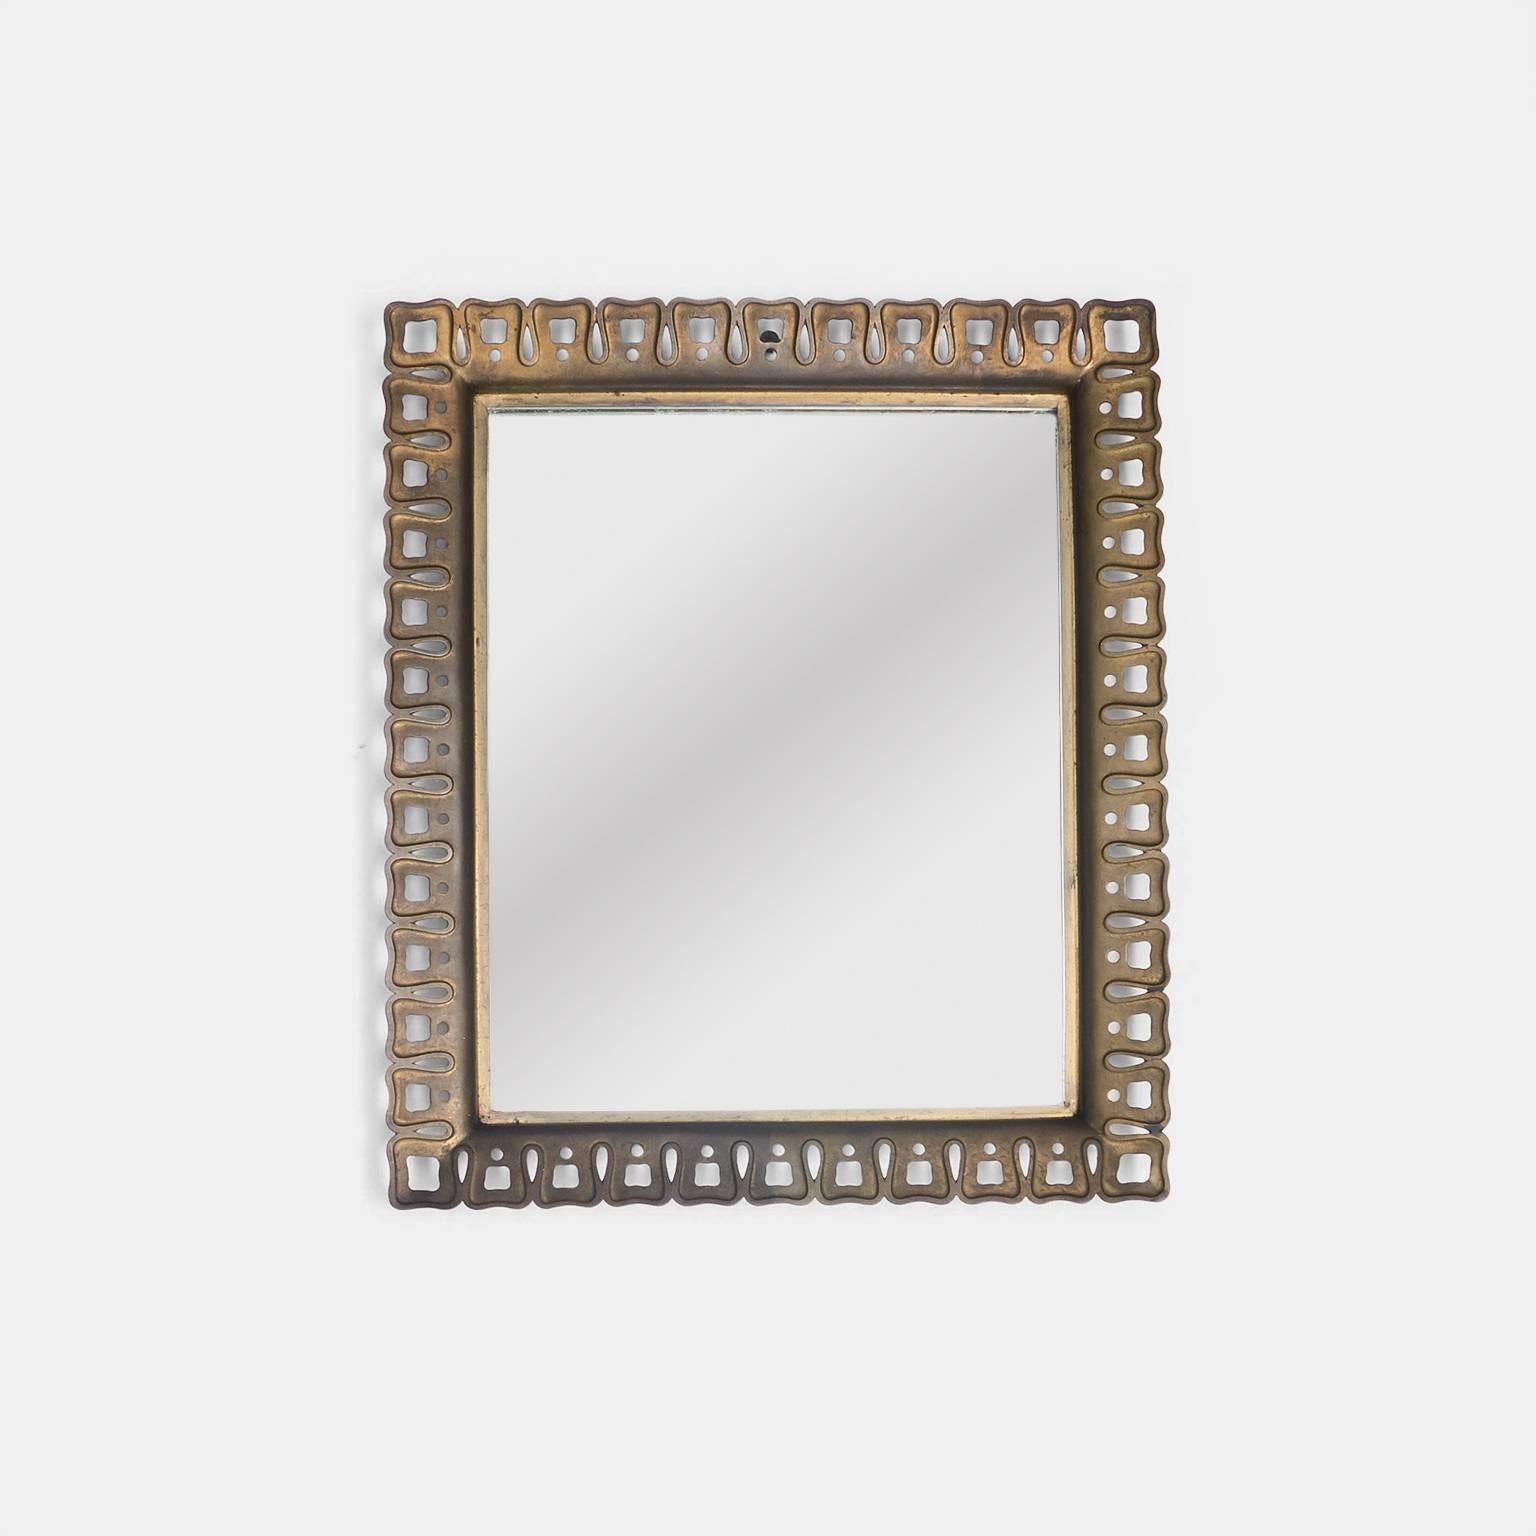 Un miroir sur mesure avec une bordure unique en laiton coulé par Paolo Buffa.
Italie, vers les années 1950.




Paolo Buffa pour Serafino Arrighi.